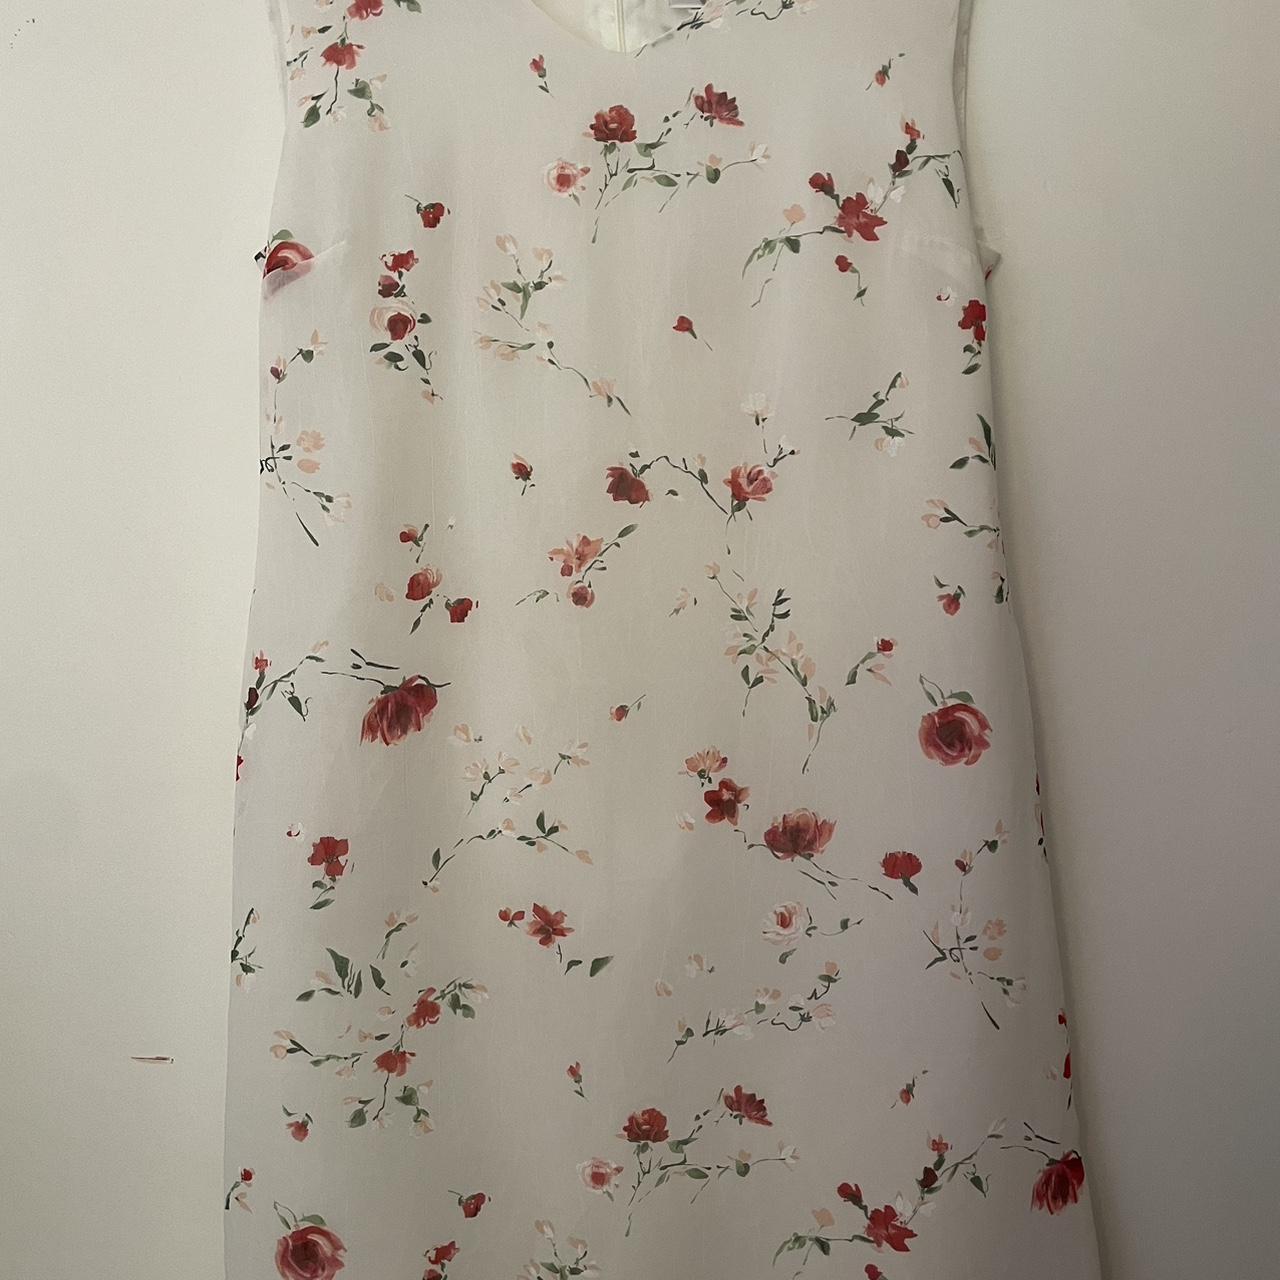 Beautiful Viviannes Collection floral dress. Size... - Depop